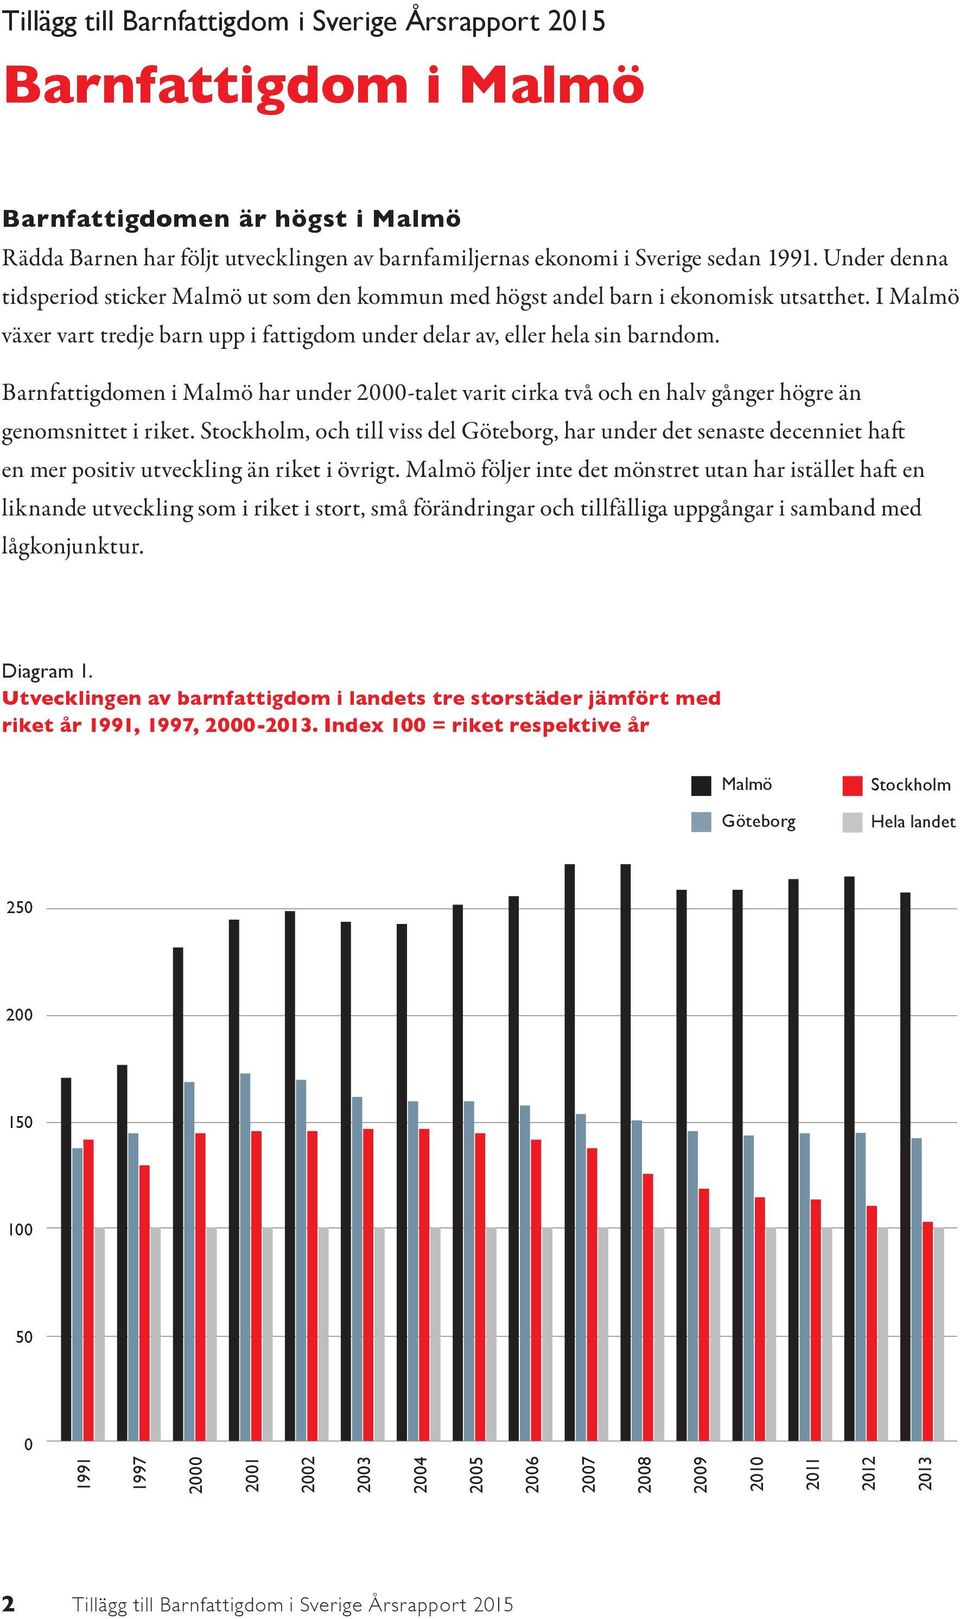 Barnfattigdomen i Malmö har under 2000-talet varit cirka två och en halv gånger högre än genomsnittet i riket.